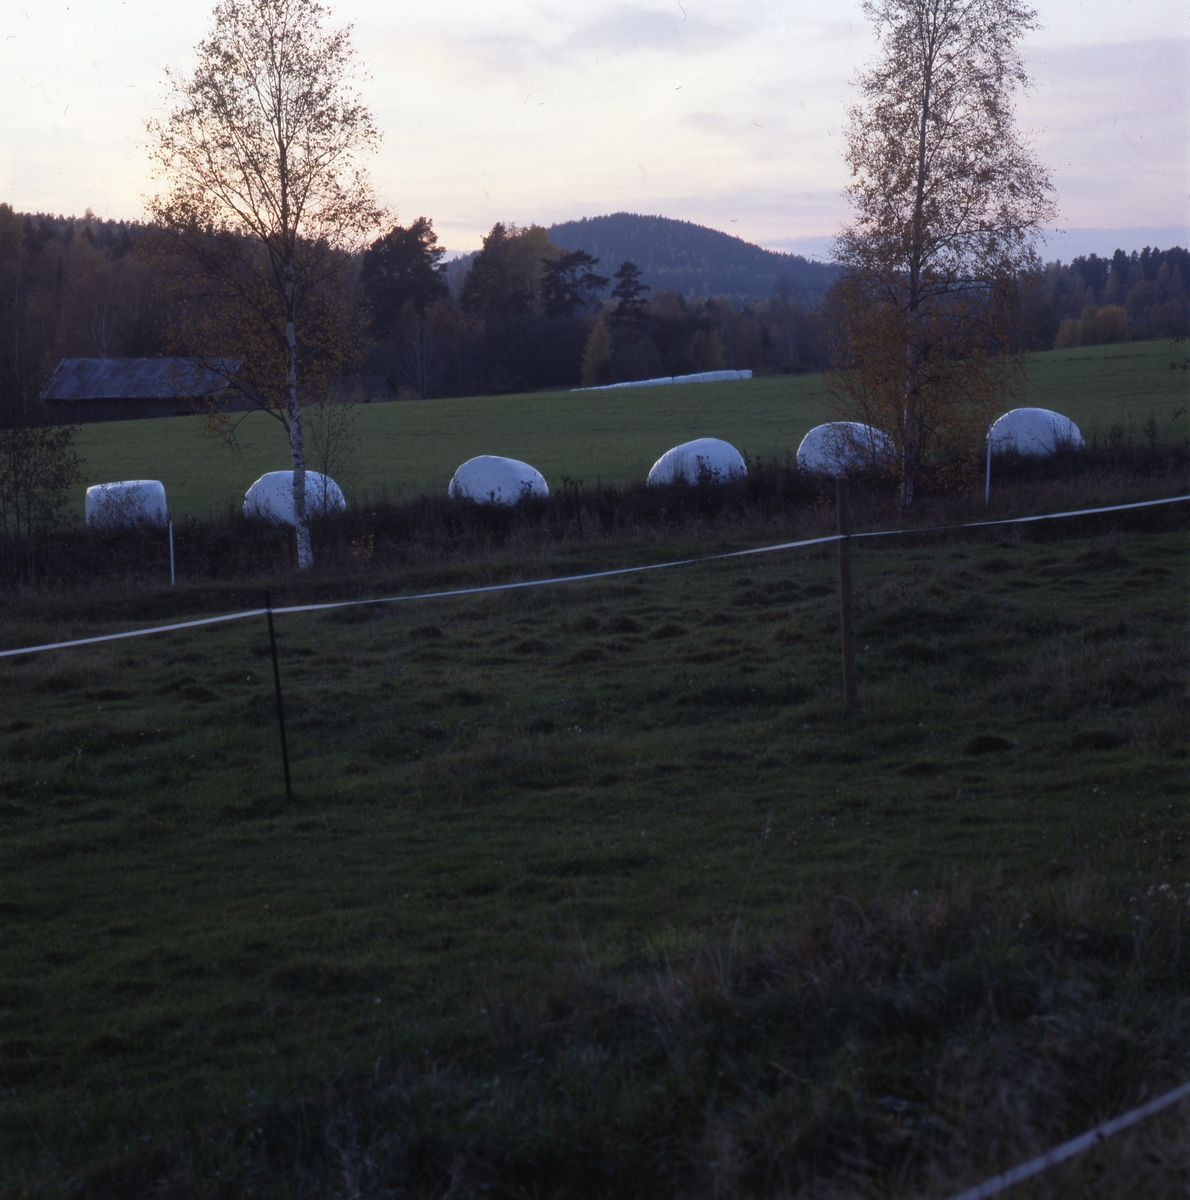 Odlingslandskap med rader av ensilagebollar i vit plast, "bonägg", 2001.